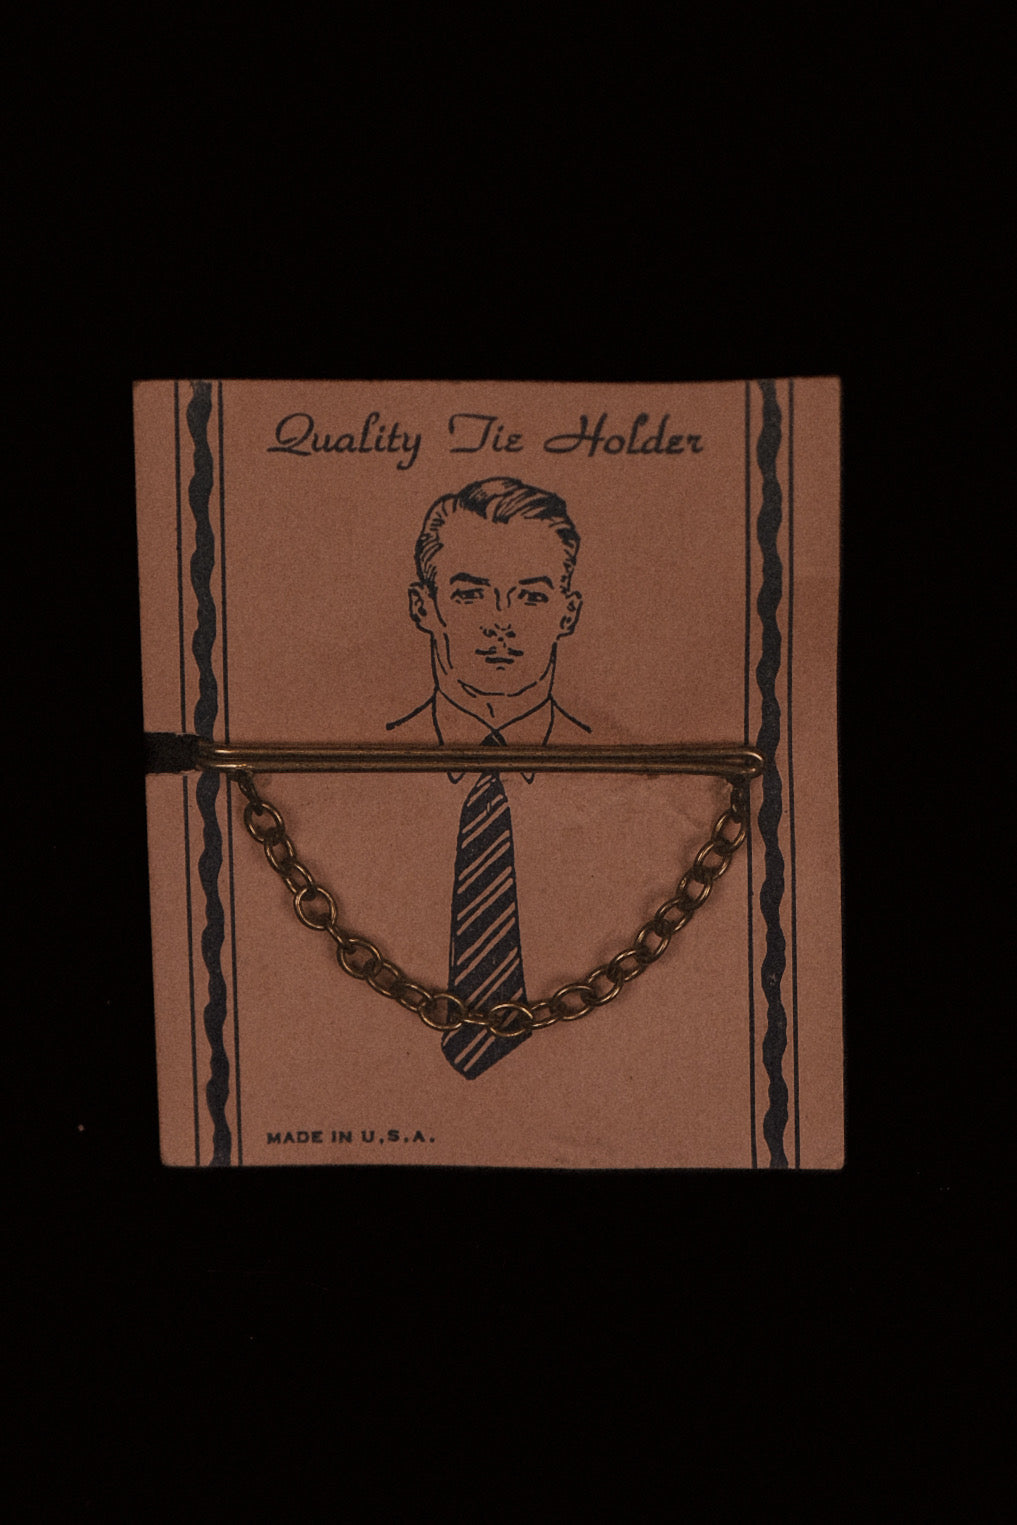 Original 1920's Tie Slide Display Card